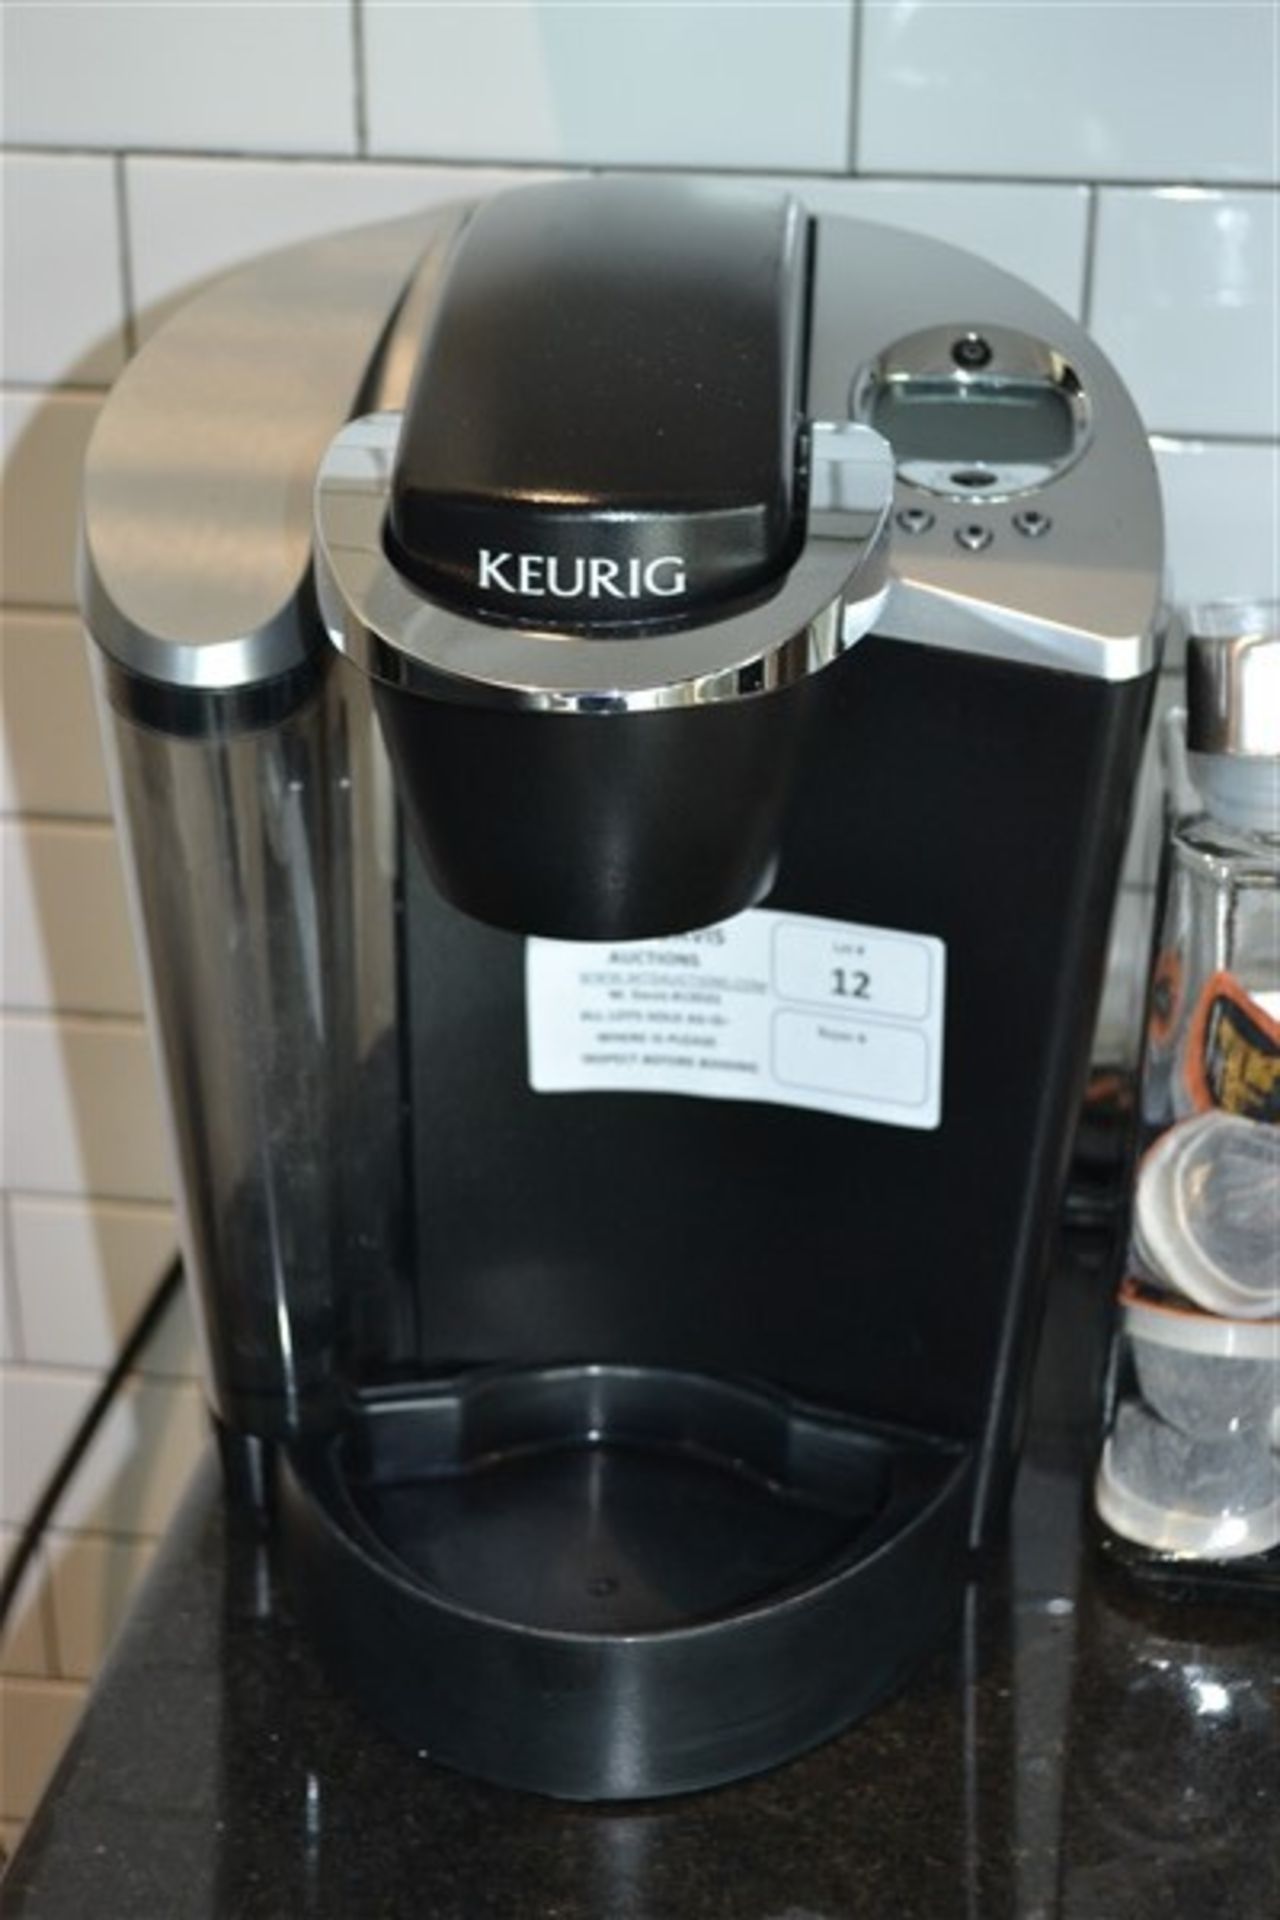 Keurig Coffee Maker - Image 2 of 2